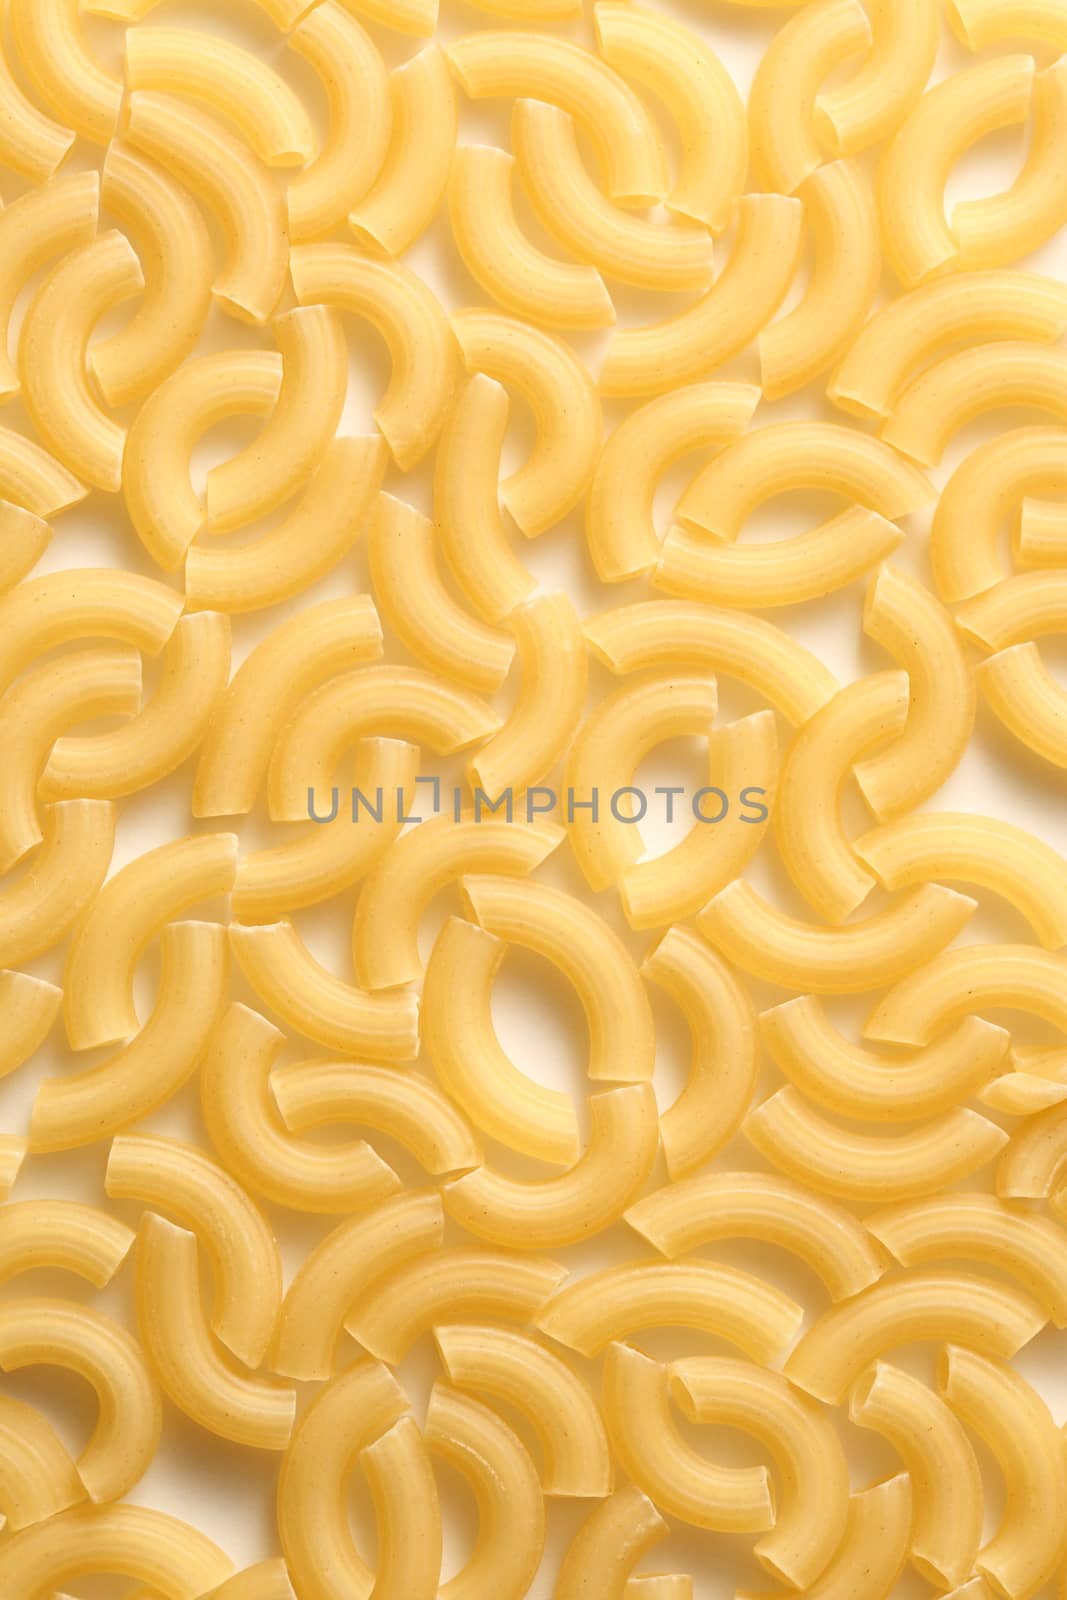 Short ribbed pasta tubes background